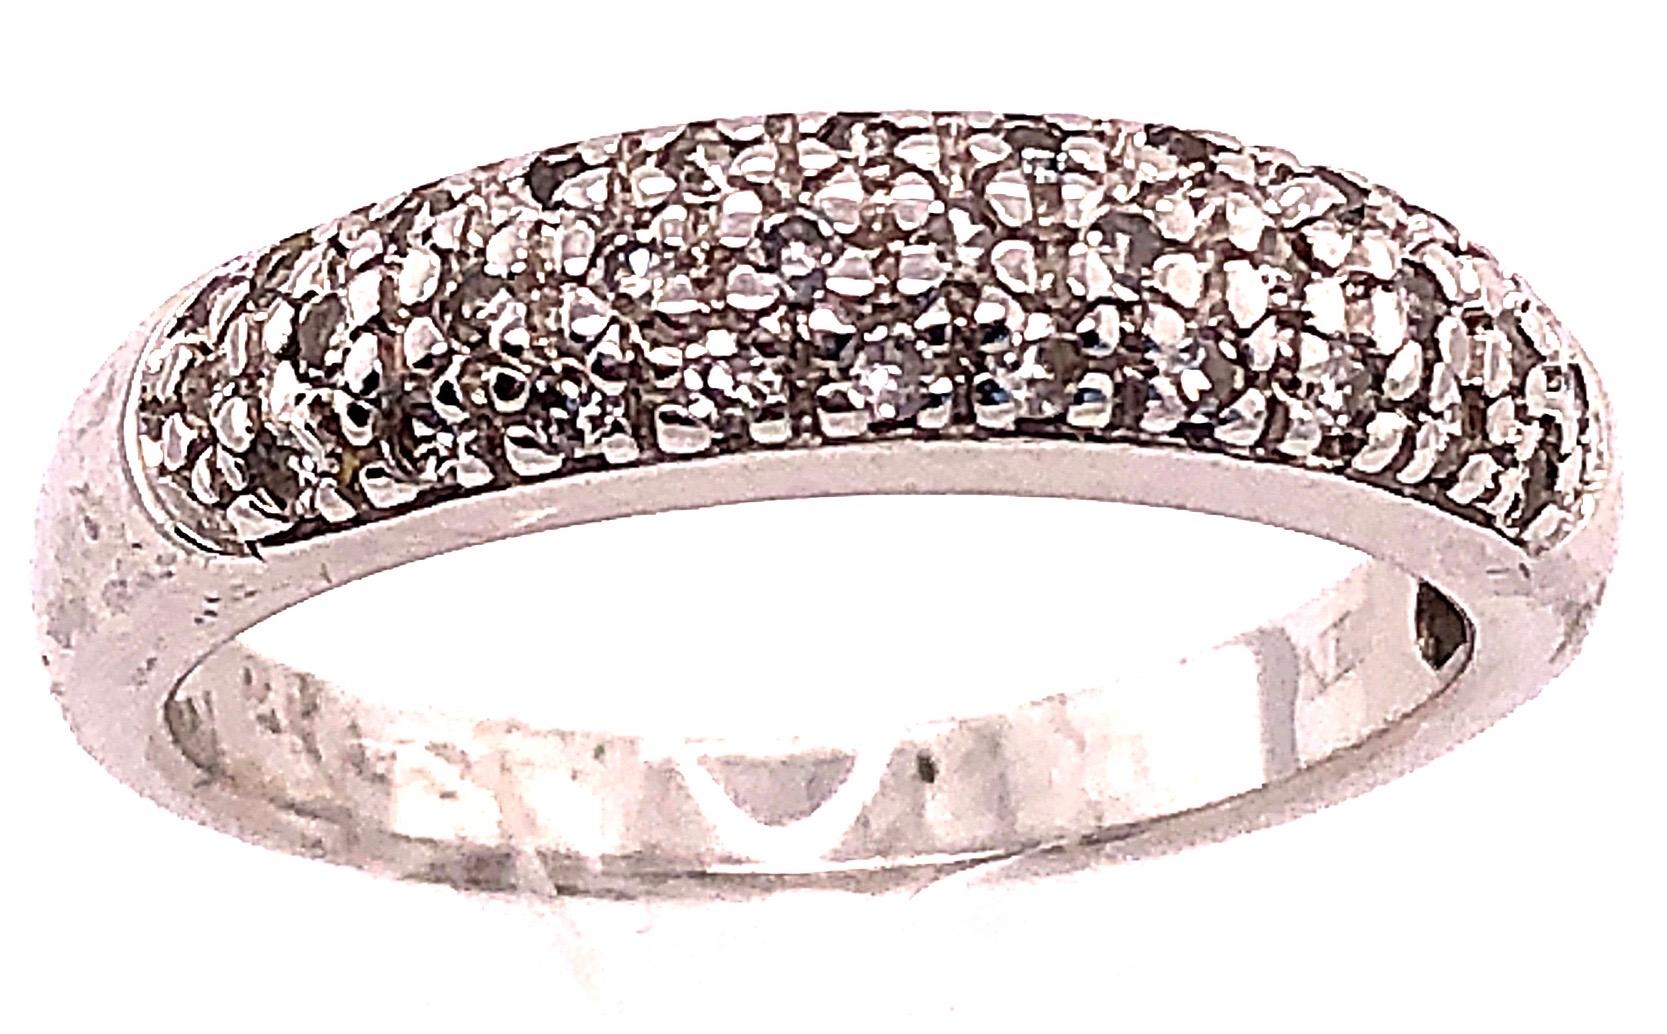 14 Karat Weißgold Diamant Halb Jahrestag Ring Hochzeit Brautband Größe 6,75.
0.40 Gesamtgewicht der Diamanten.
3.20 Gramm Gesamtgewicht.